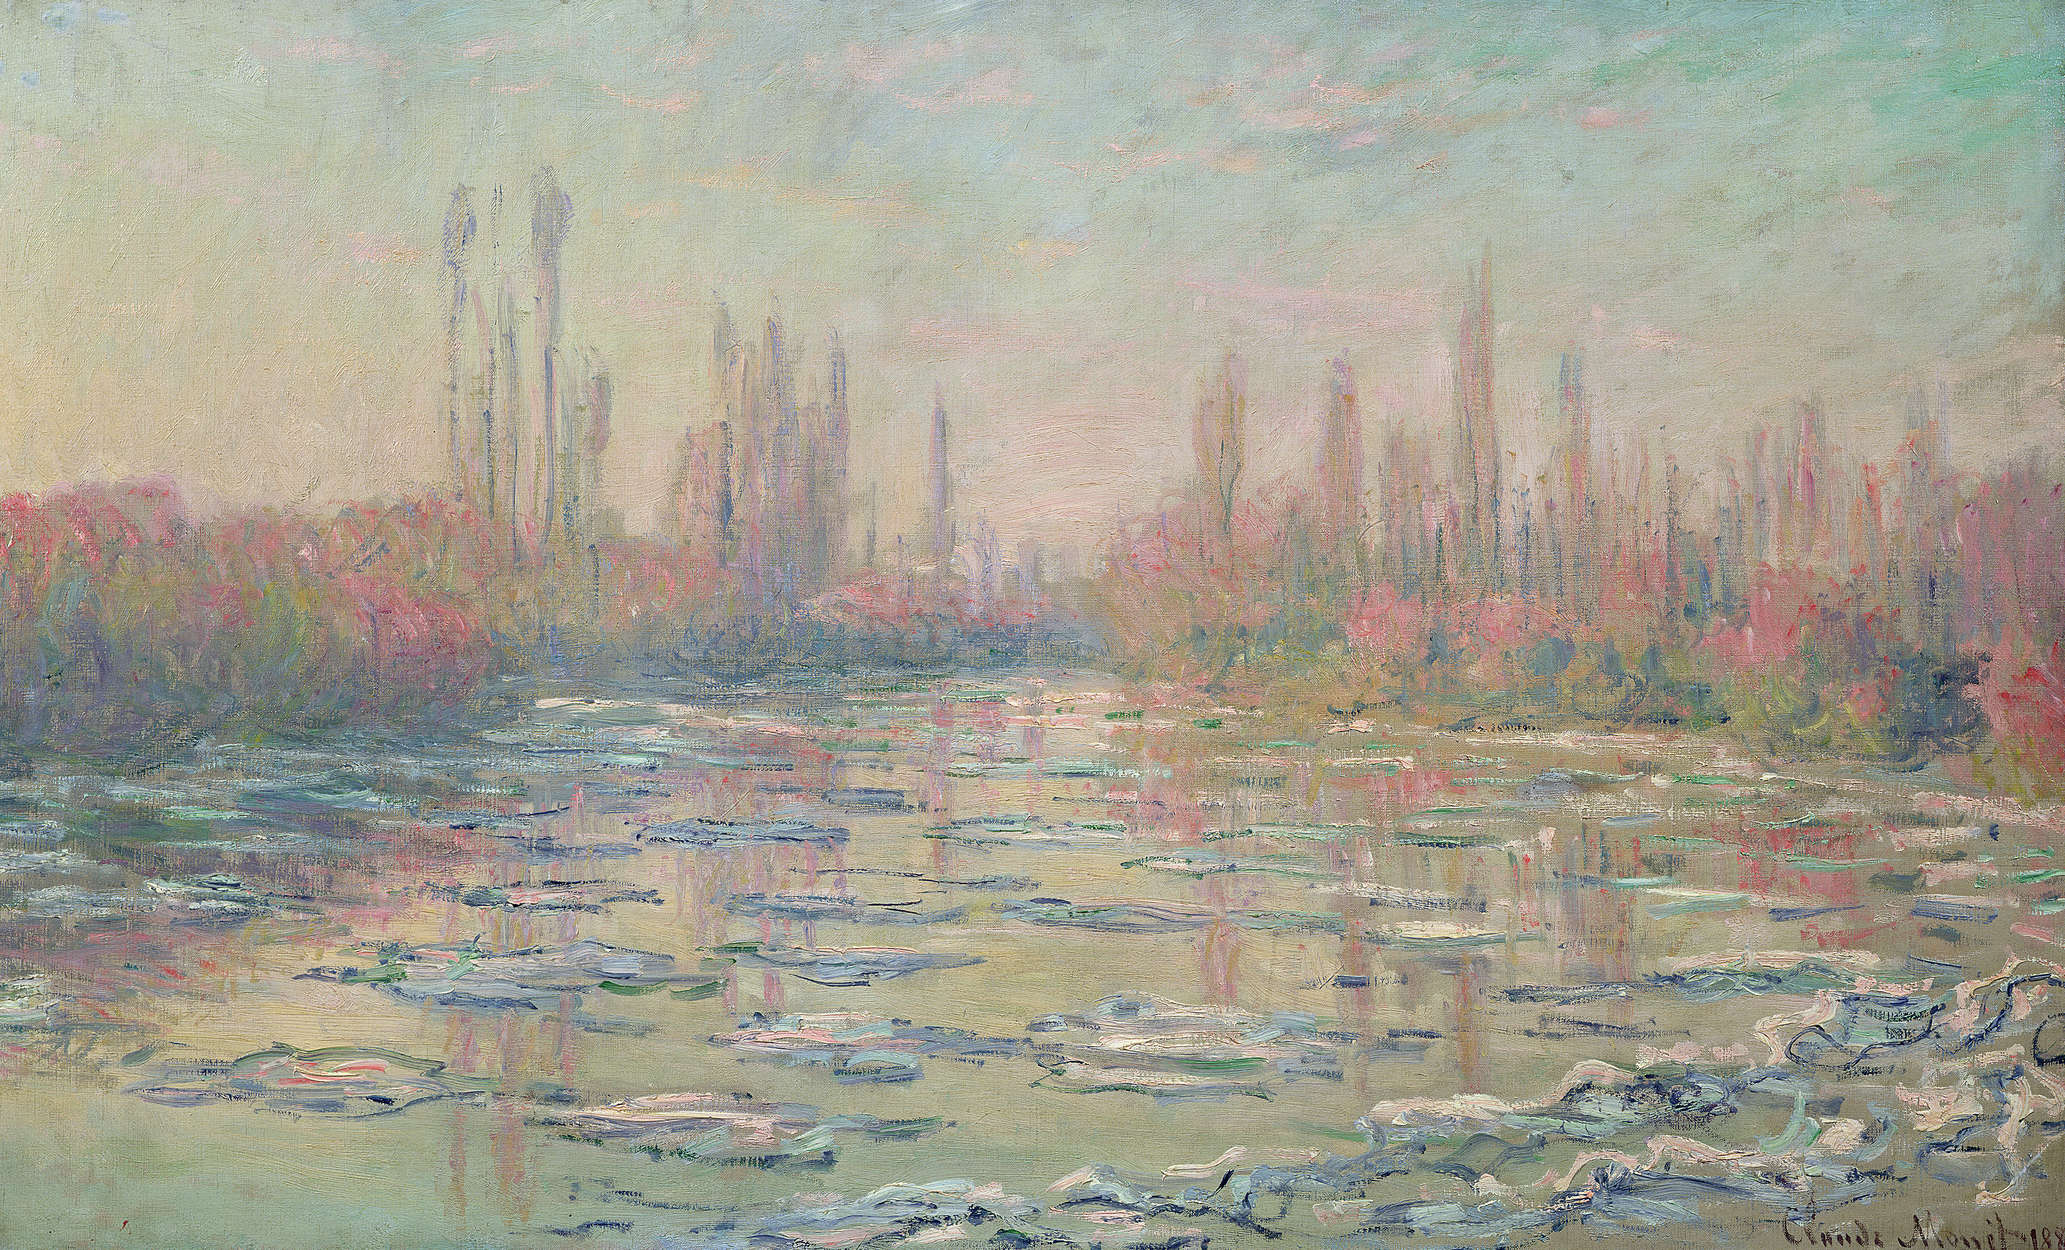             Mural "El deshielo en el Sena cerca de Vetheuil" de Claude Monet
        